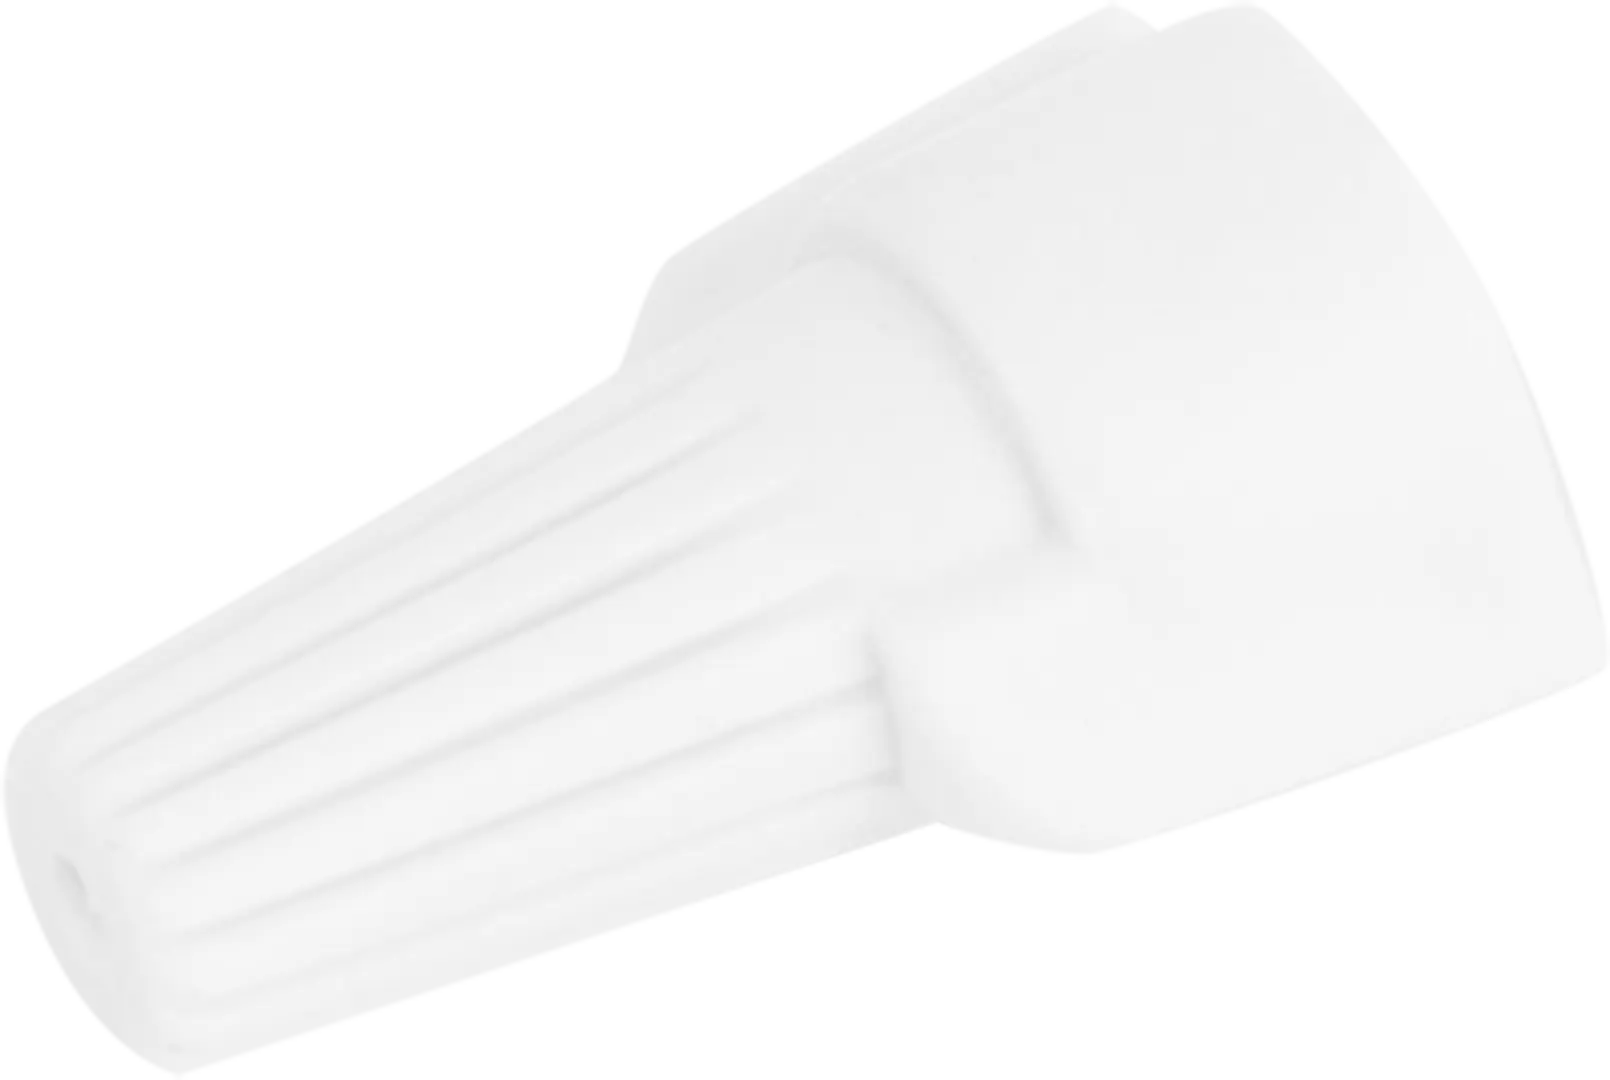 Соединительный изолирующий зажим Duwi СИЗ-Л-3 5-15 мм цвет белый 10 шт. соединительный изолирующий зажим duwi сиз 5 4 5 14 мм цвет красный 10 шт